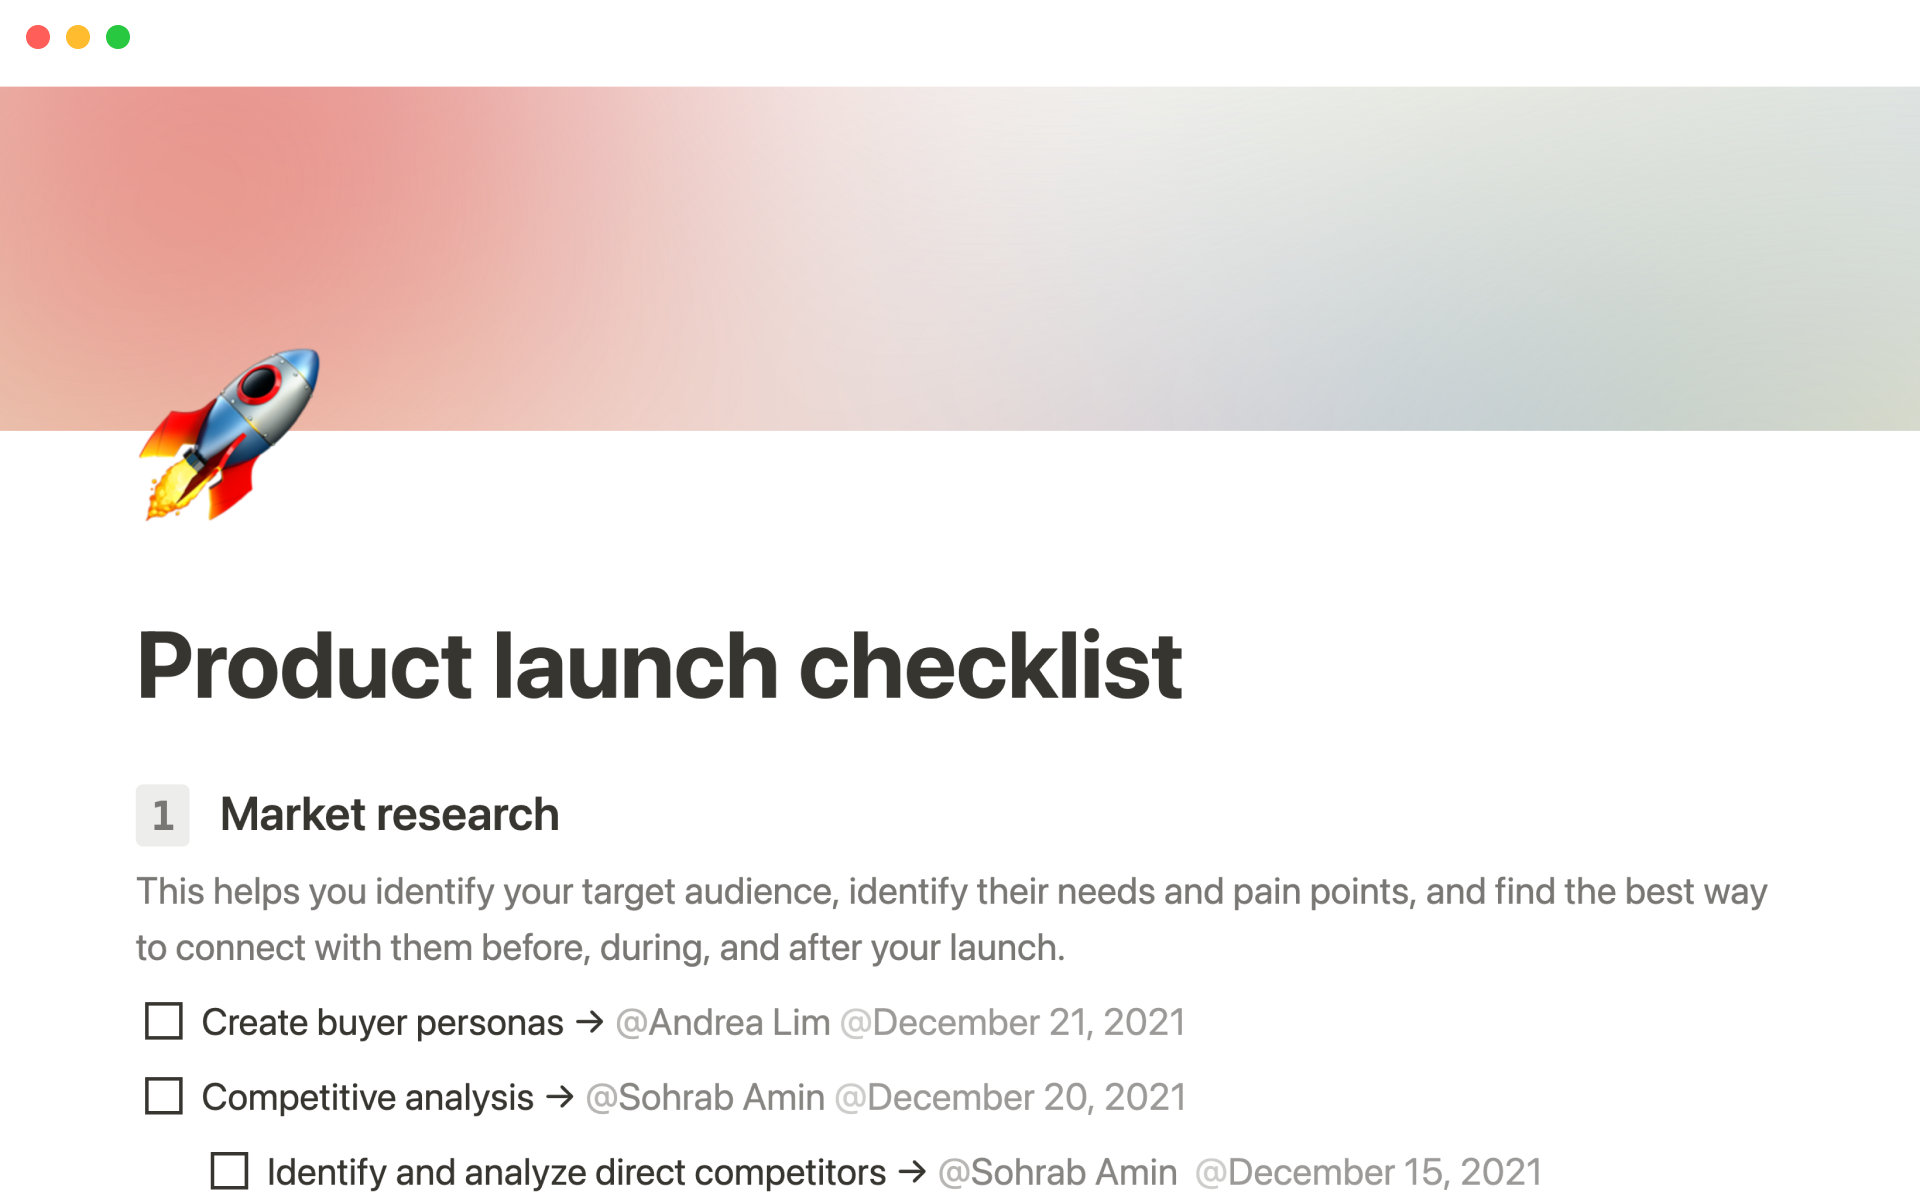 Product launch checklistのテンプレートのプレビュー